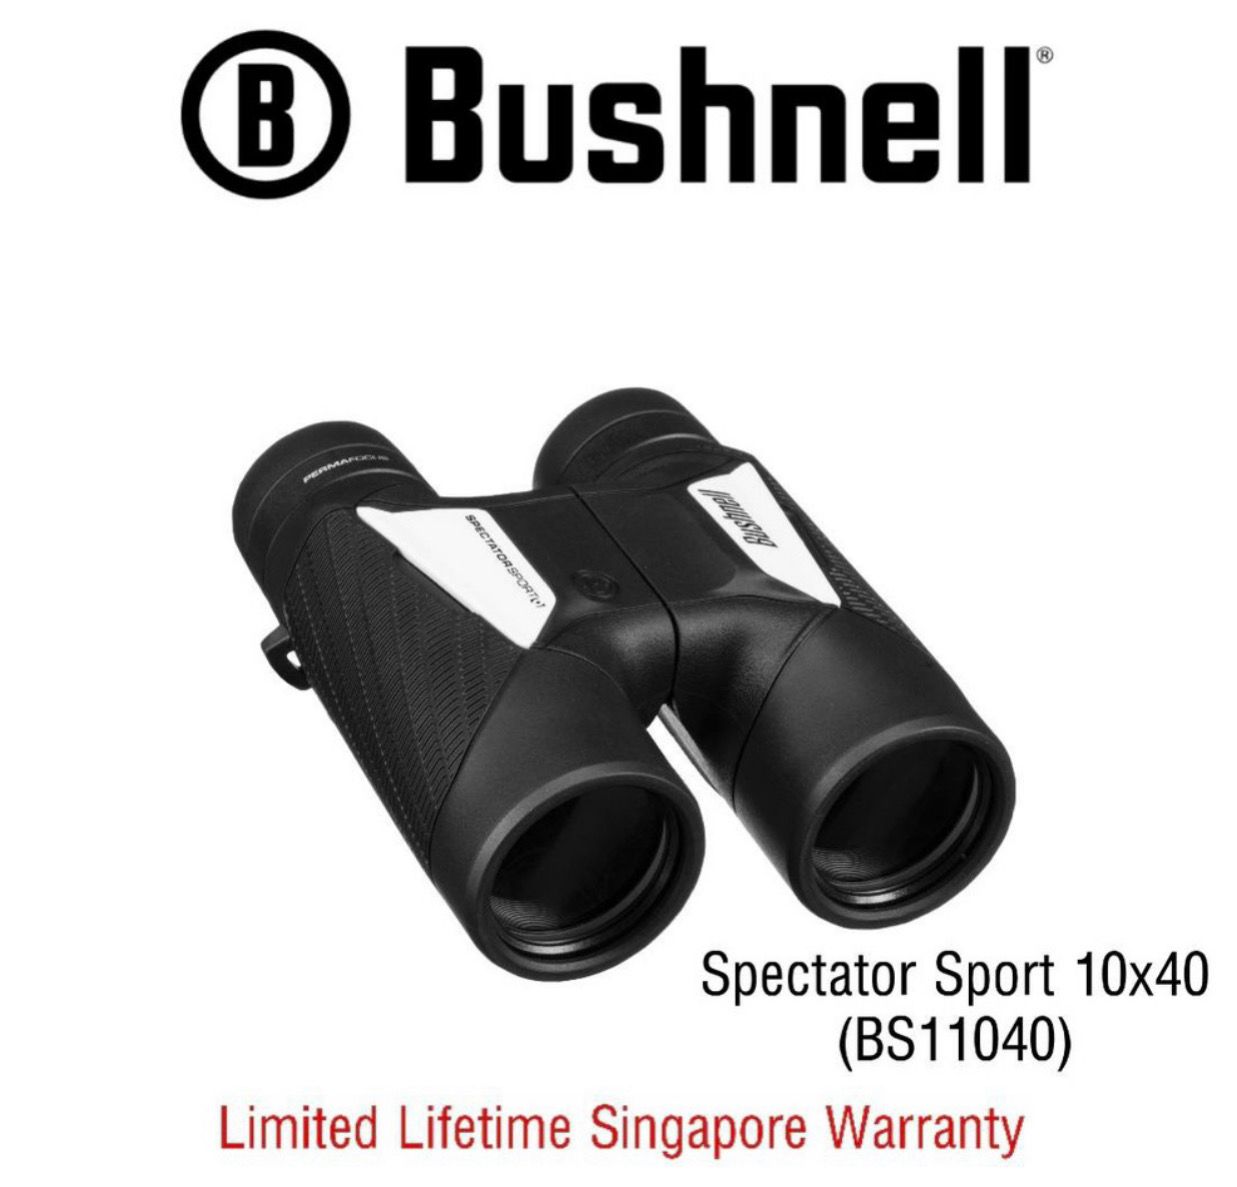 Bushnell Binoculars Spectator Sport 10x40 (BS11040) - Limited Lifetime Warranty